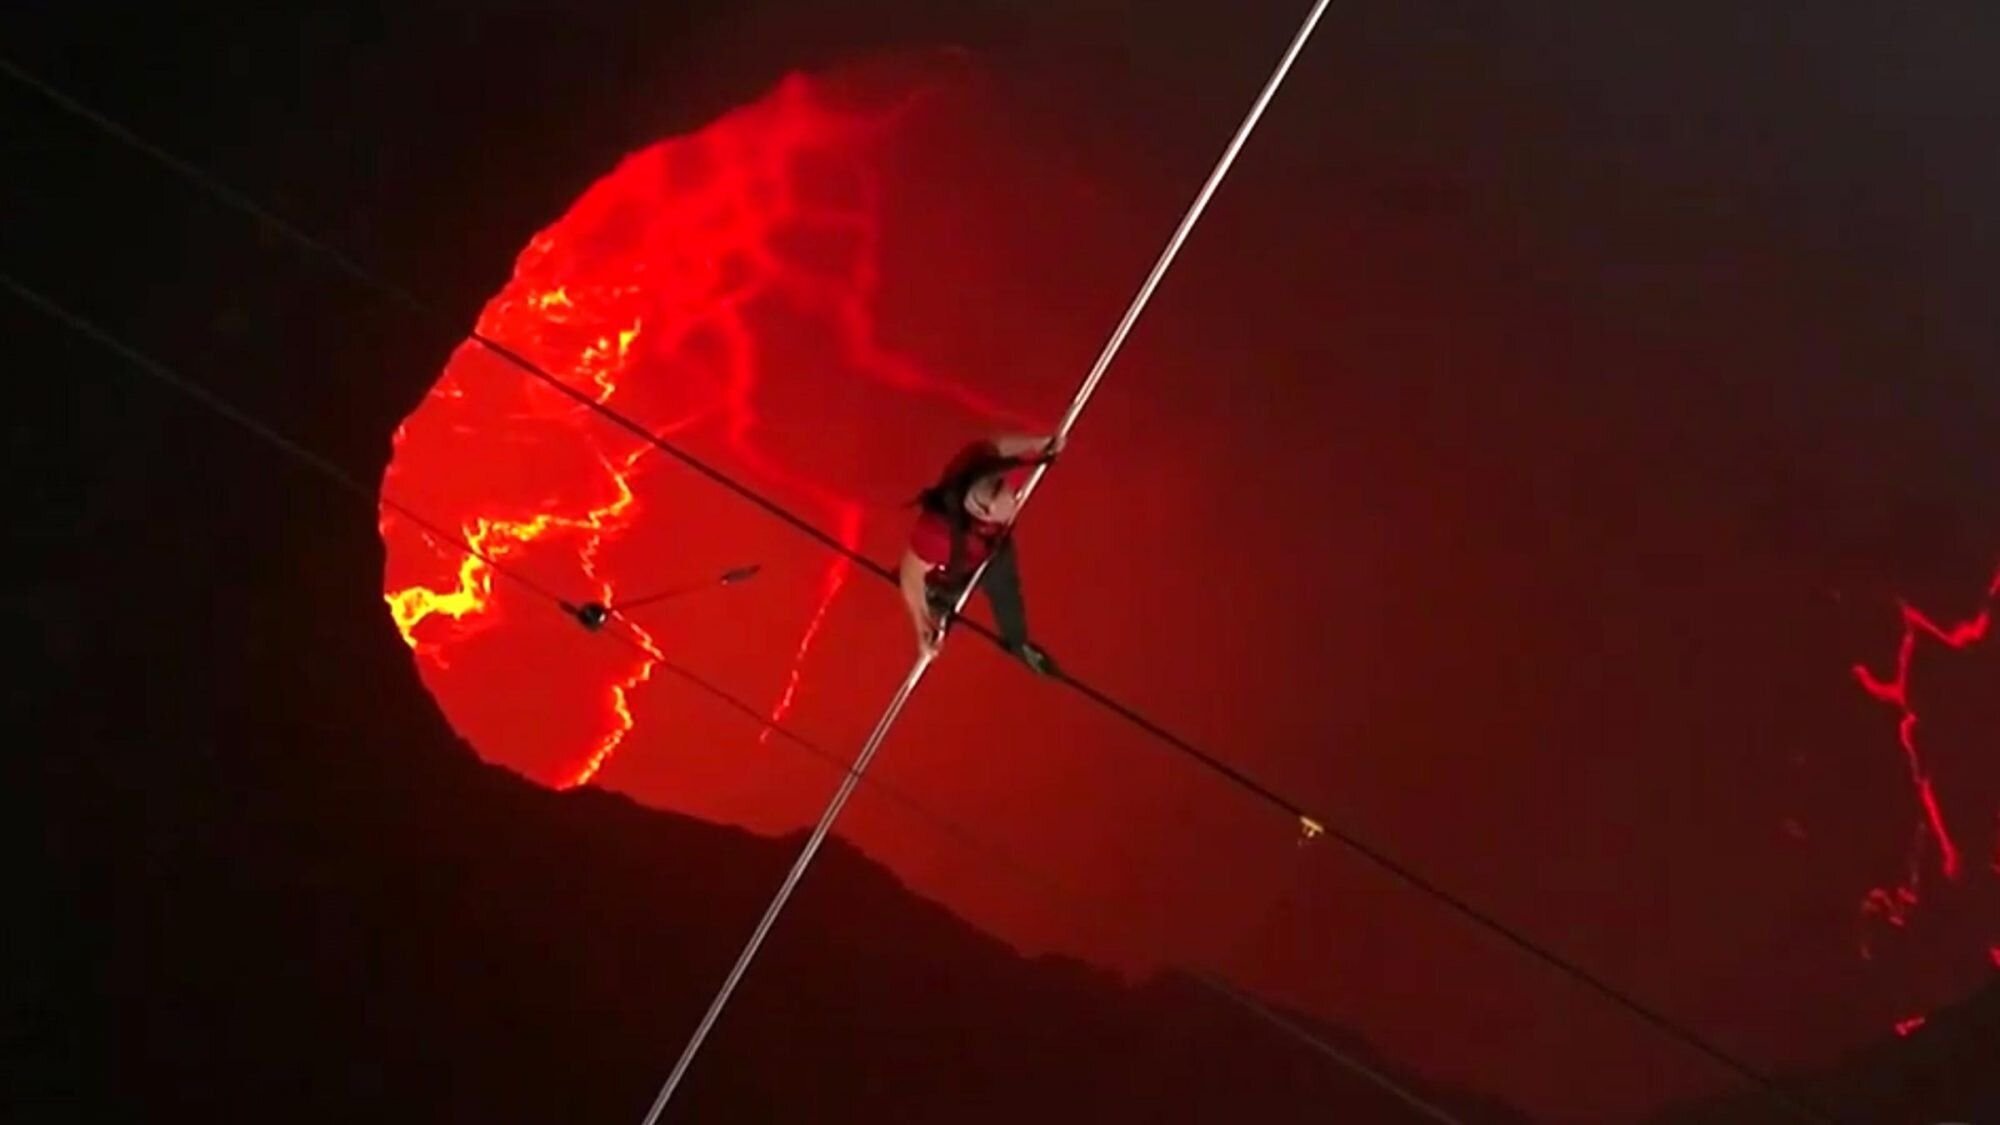  VIDEO: Cascadorie dusă la extrem: a mers pe sârmă deasupra unui vulcan activ